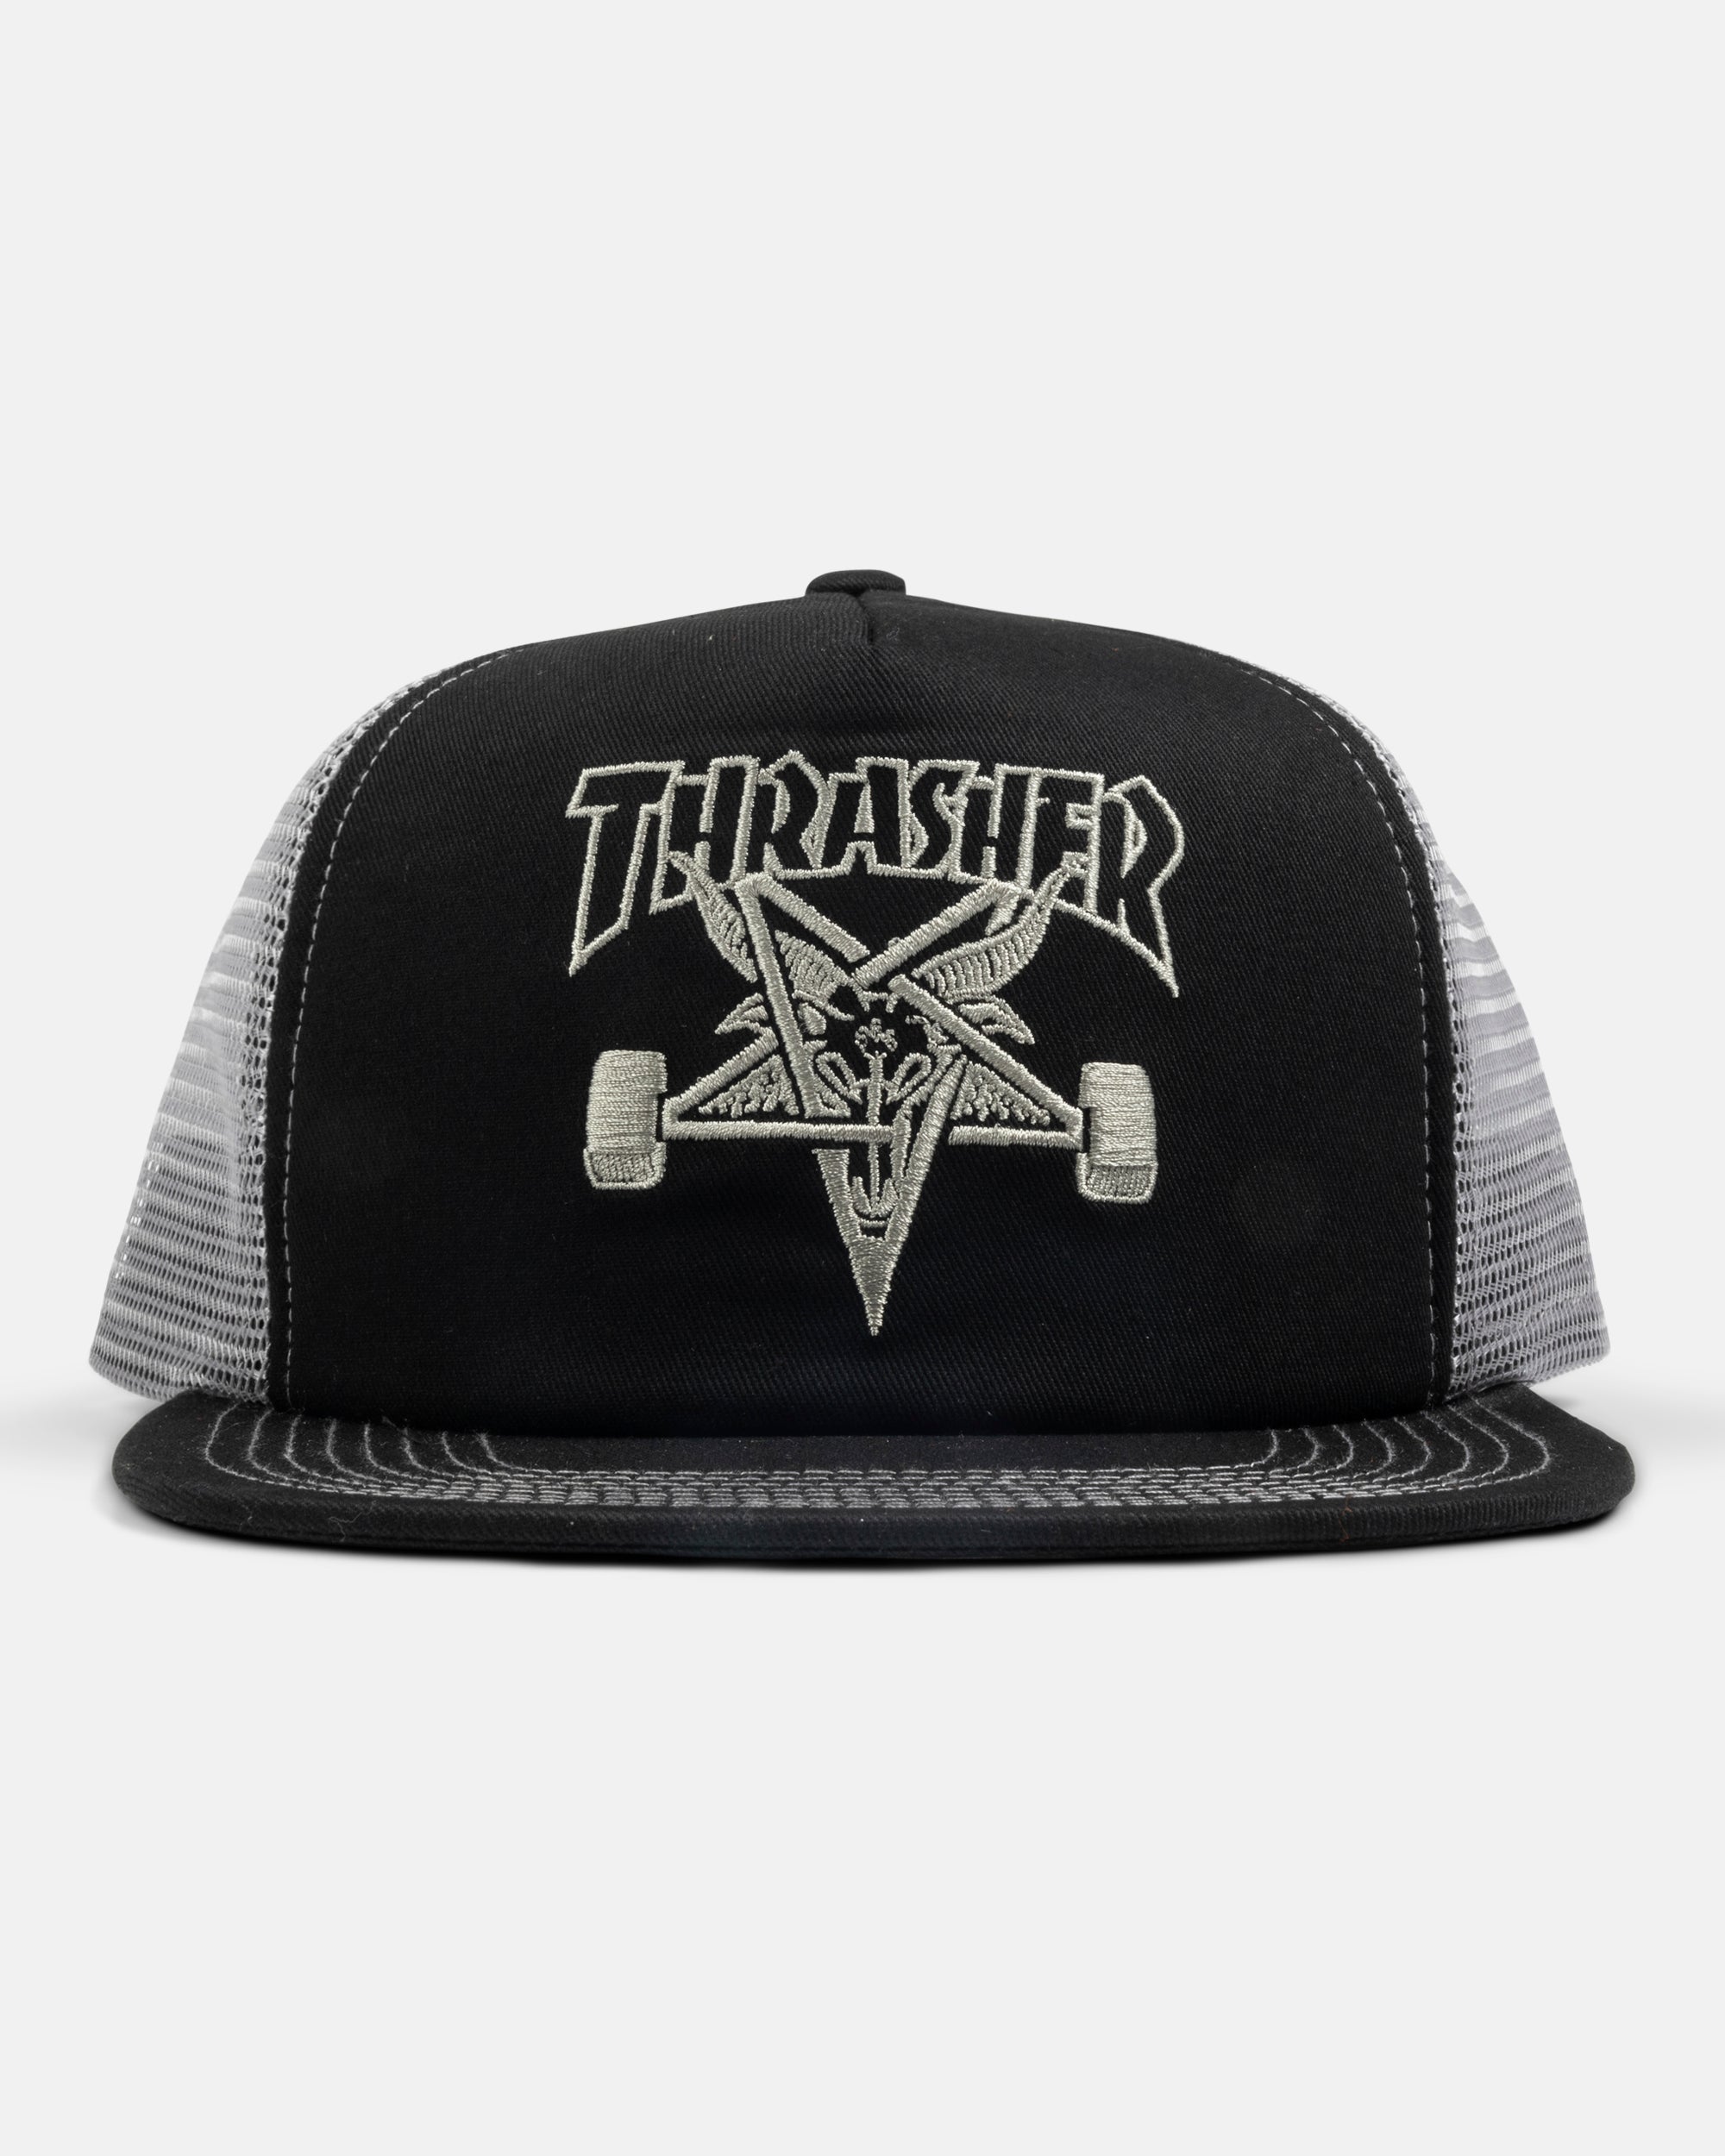 SKATEGOAT - TRUCKER - BLACK / GREY – Thrasher Magazine